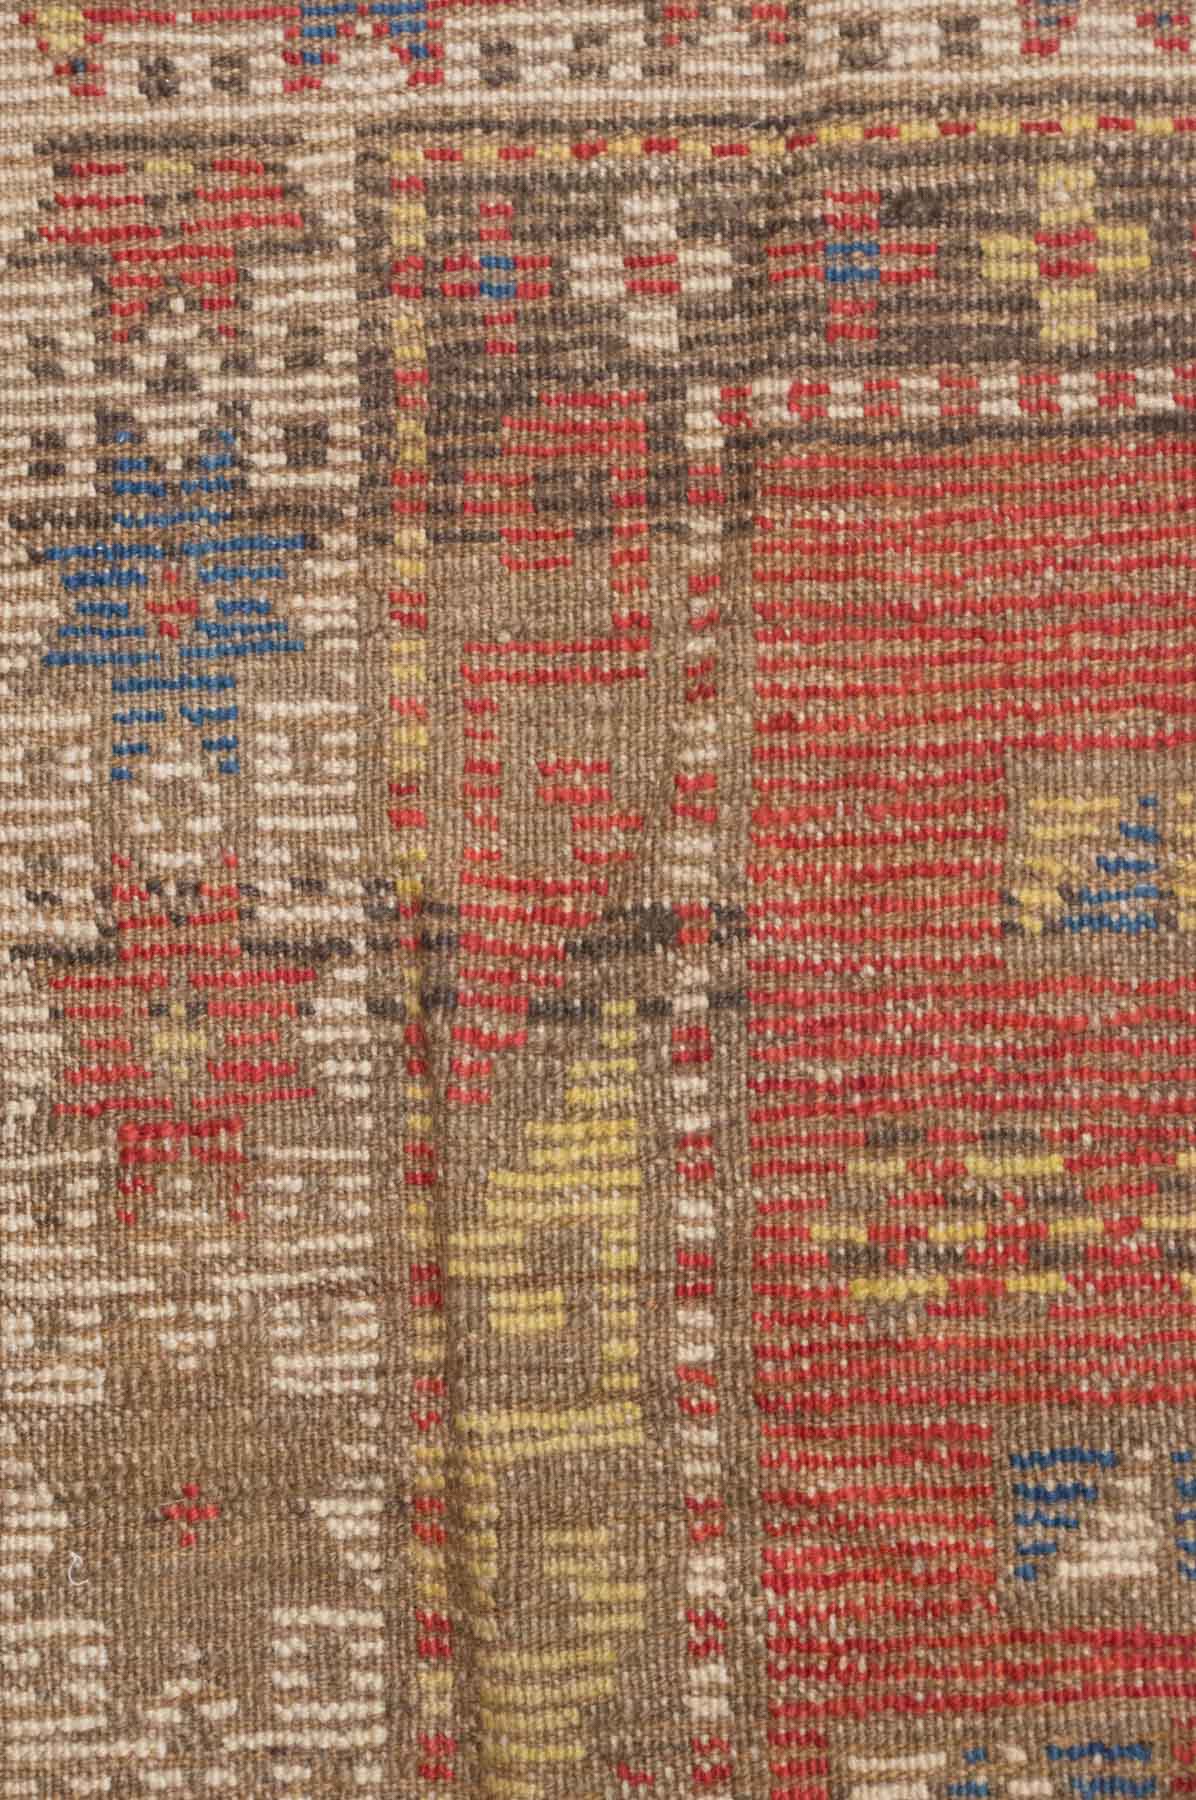 alter Orientalischer Teppich / Old oriental carpethandgeknüpft, ca. 195 cm x 133 cm /
tied by - Image 3 of 3